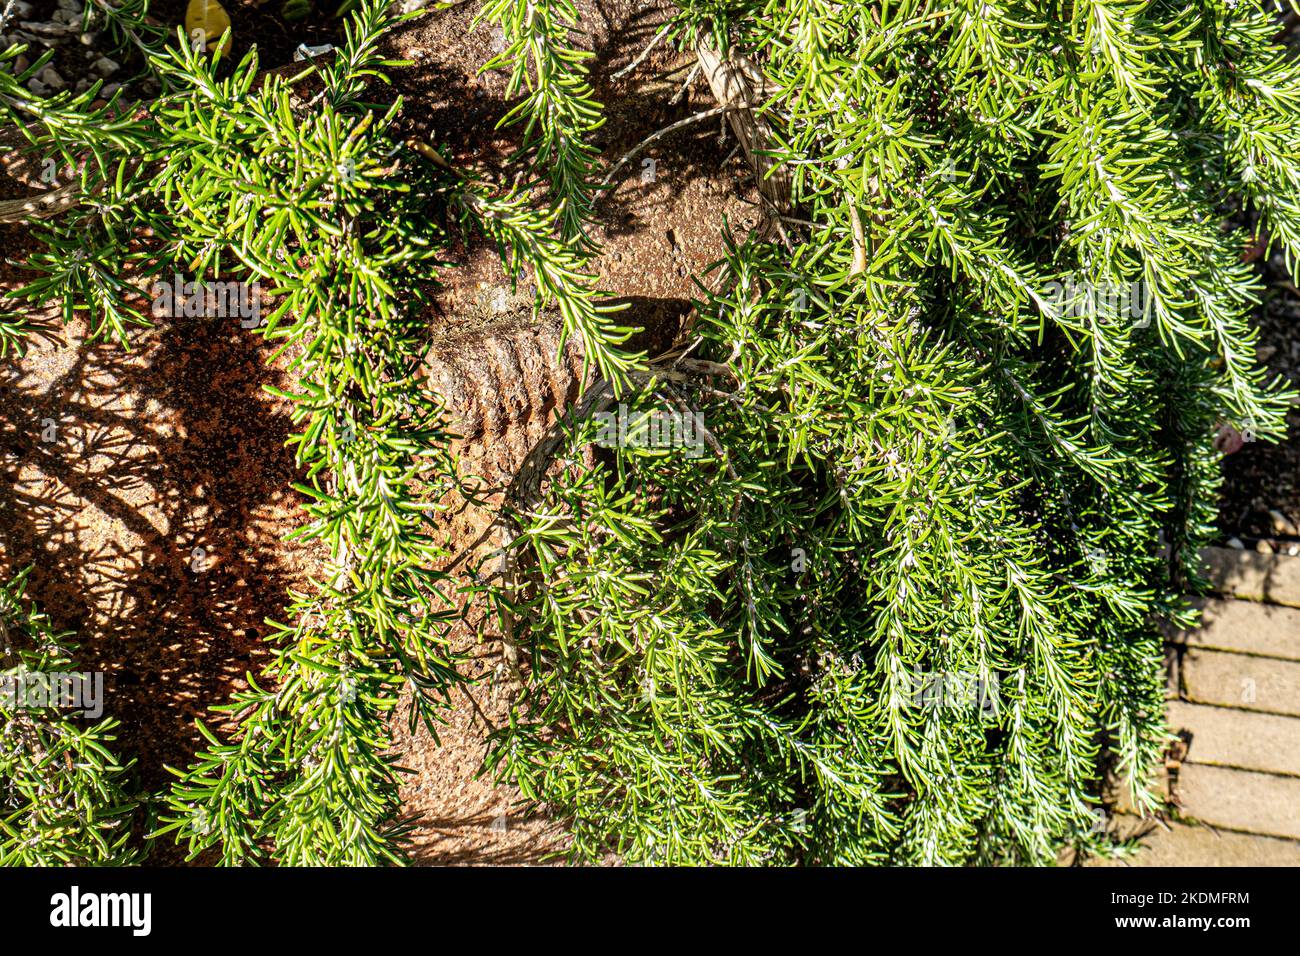 ROSMARIN Salvia rosmarinus 'Foxtail' Kraut wächst in einem großen Terrakottatopf. Foxtail Rosmarin, Pflanze der Erinnerung und Freundschaft. Stockfoto